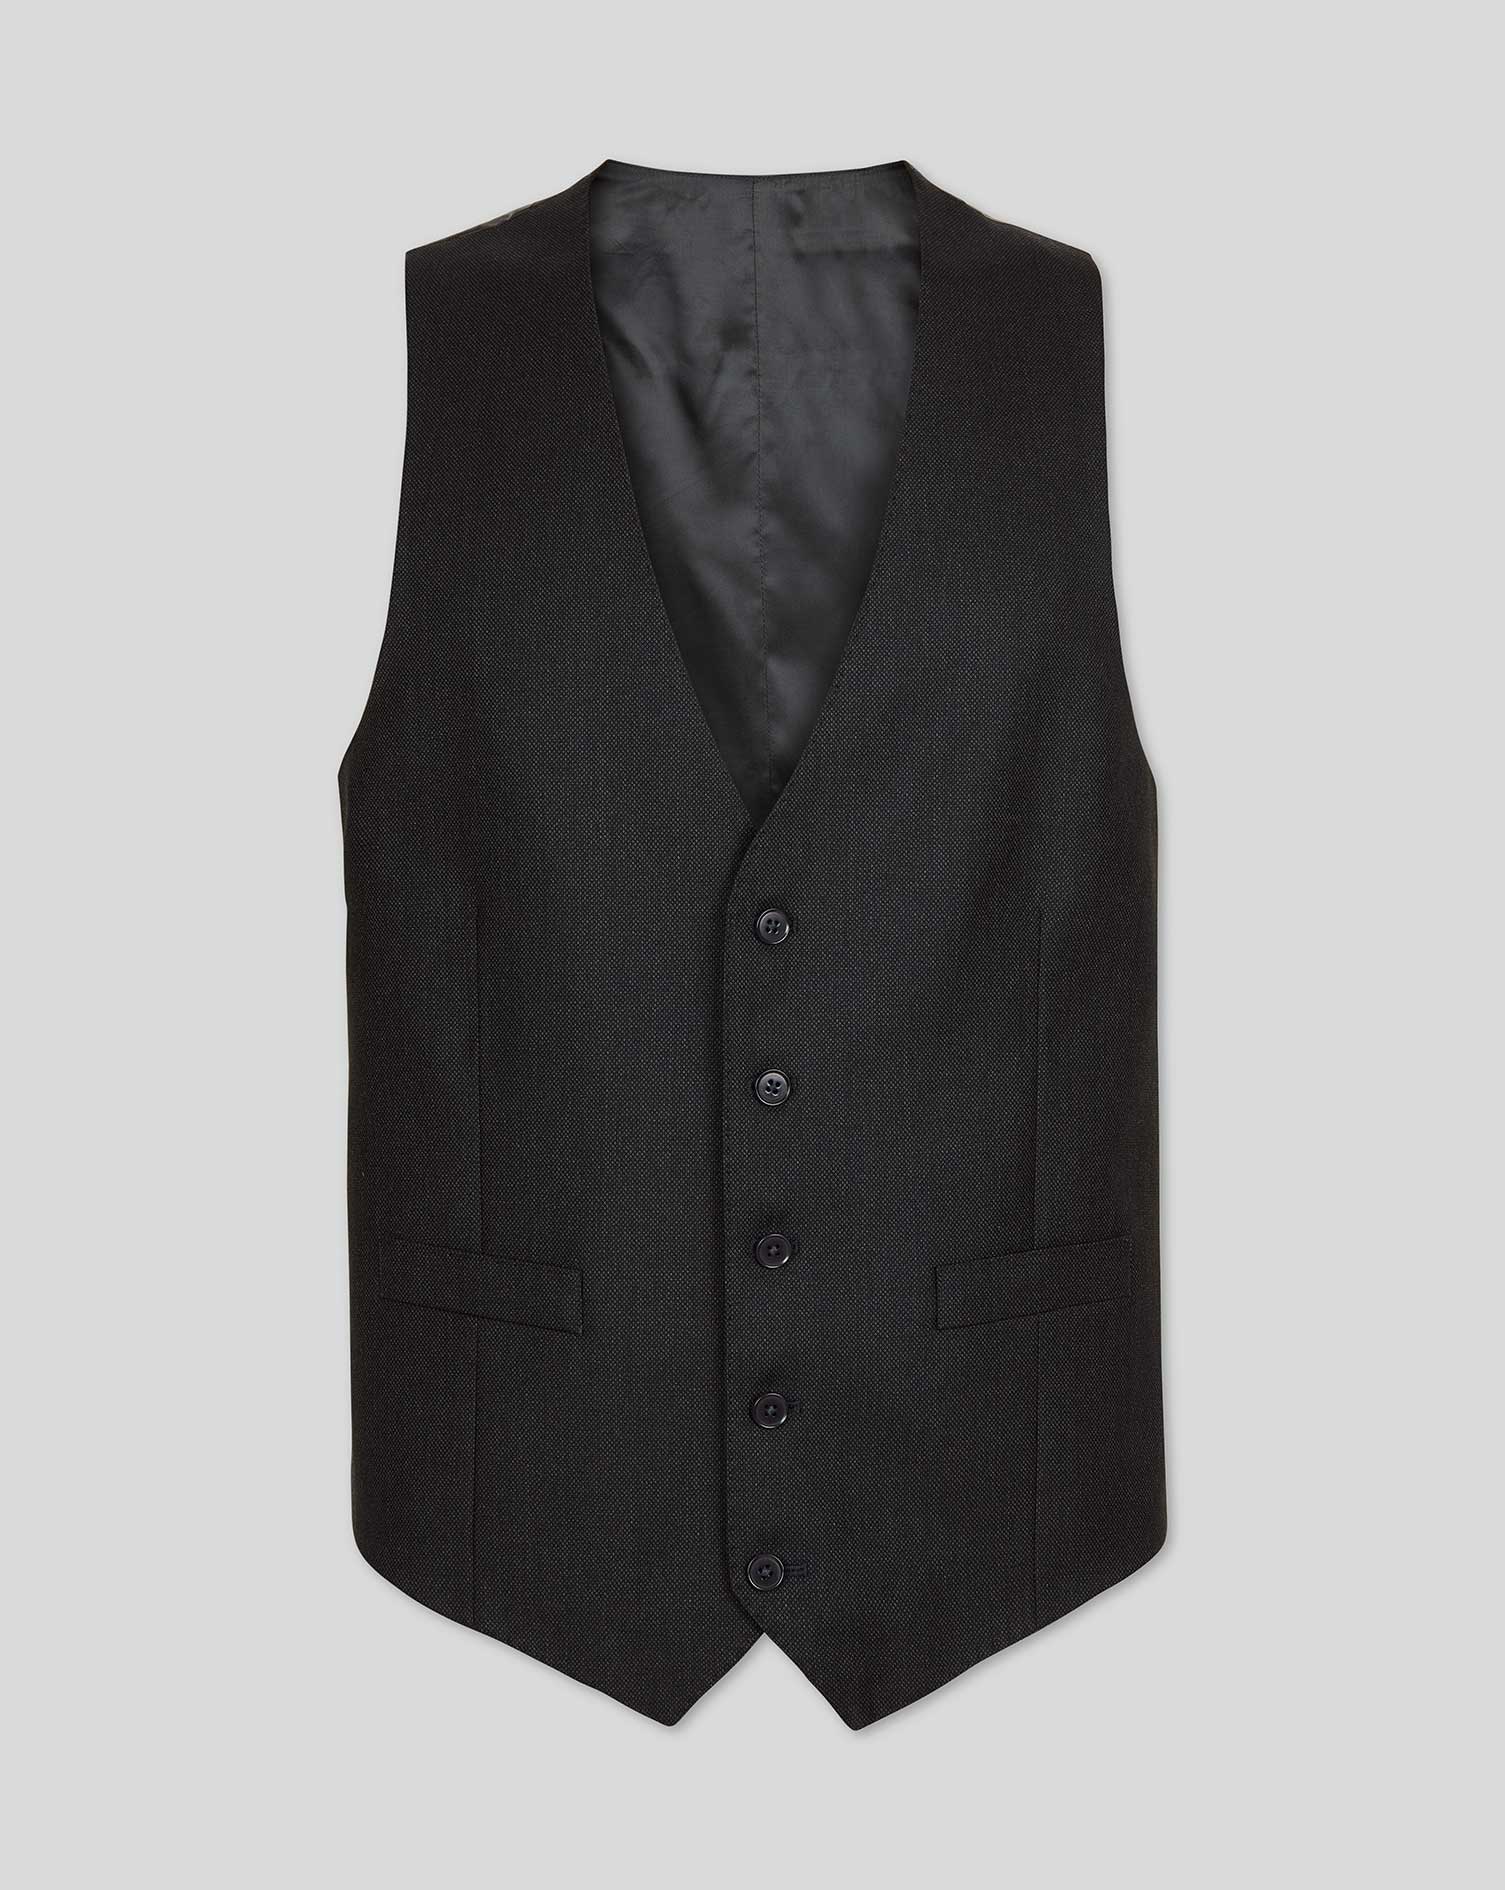 Men's Charles Tyrwhitt Birdseye Travel Suit Waistcoat - Charcoal Grey Size w36 Wool
